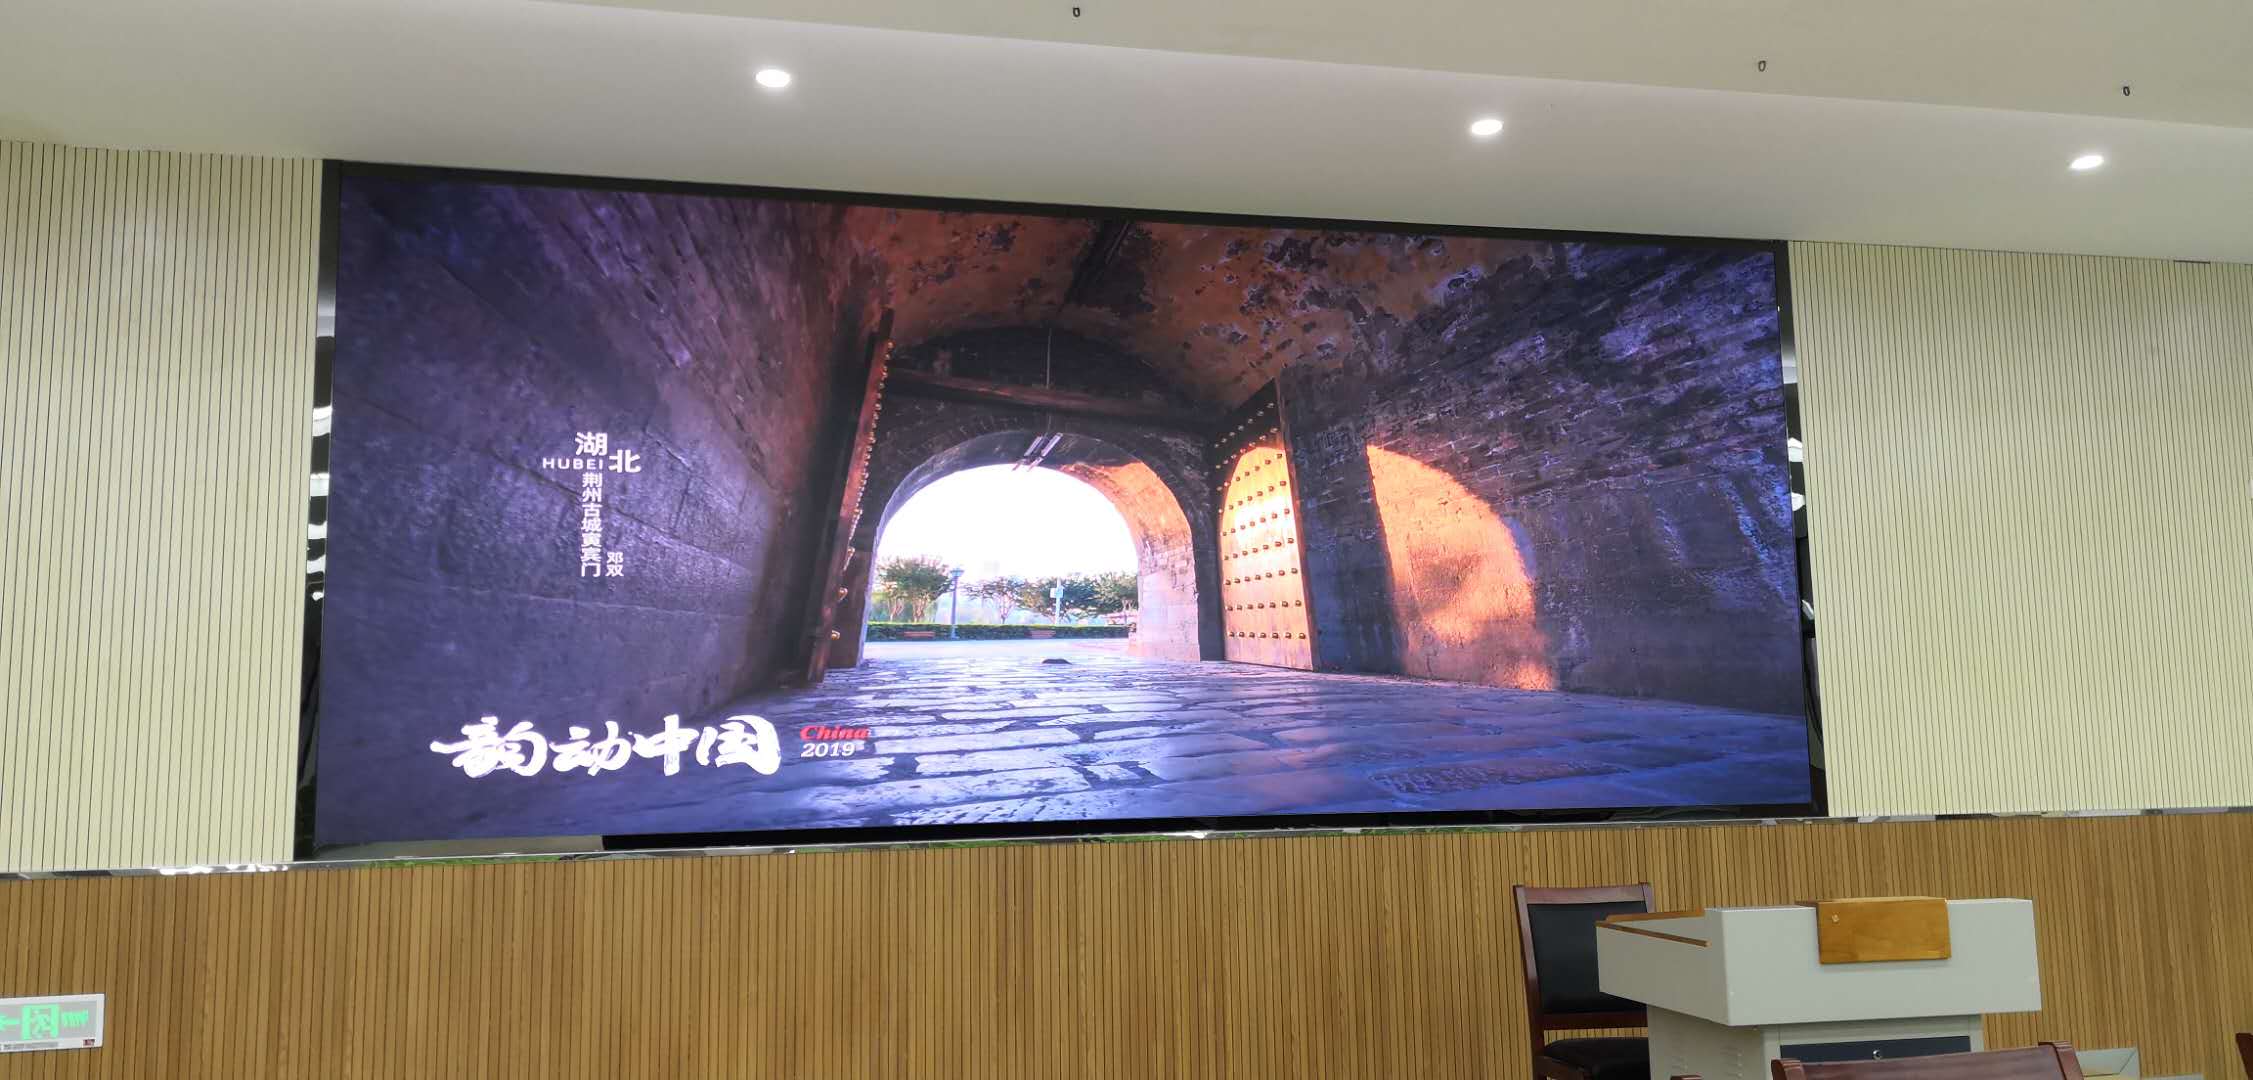 P2.0小间距LED显示屏-壁挂安装-江苏省宿迁市豫新初级中学安装项目